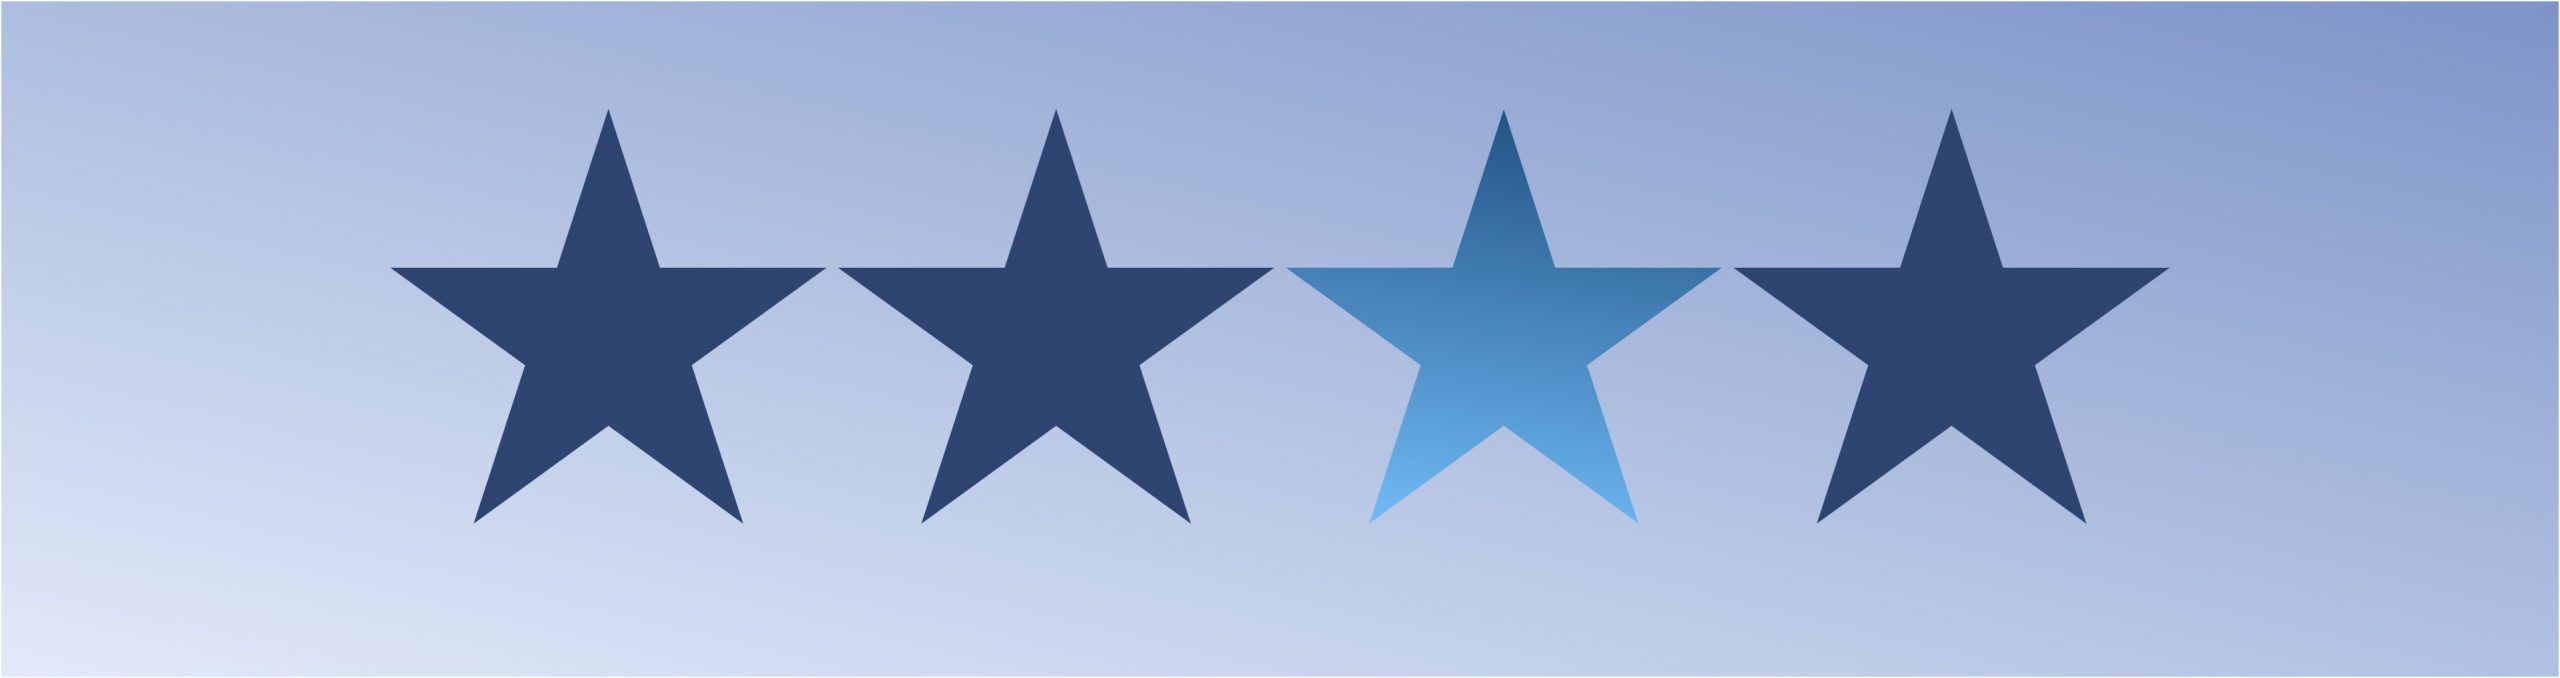 Fundo azul e 4 estrelas mostrando o controle do vocabulário no gerenciamento da informação.